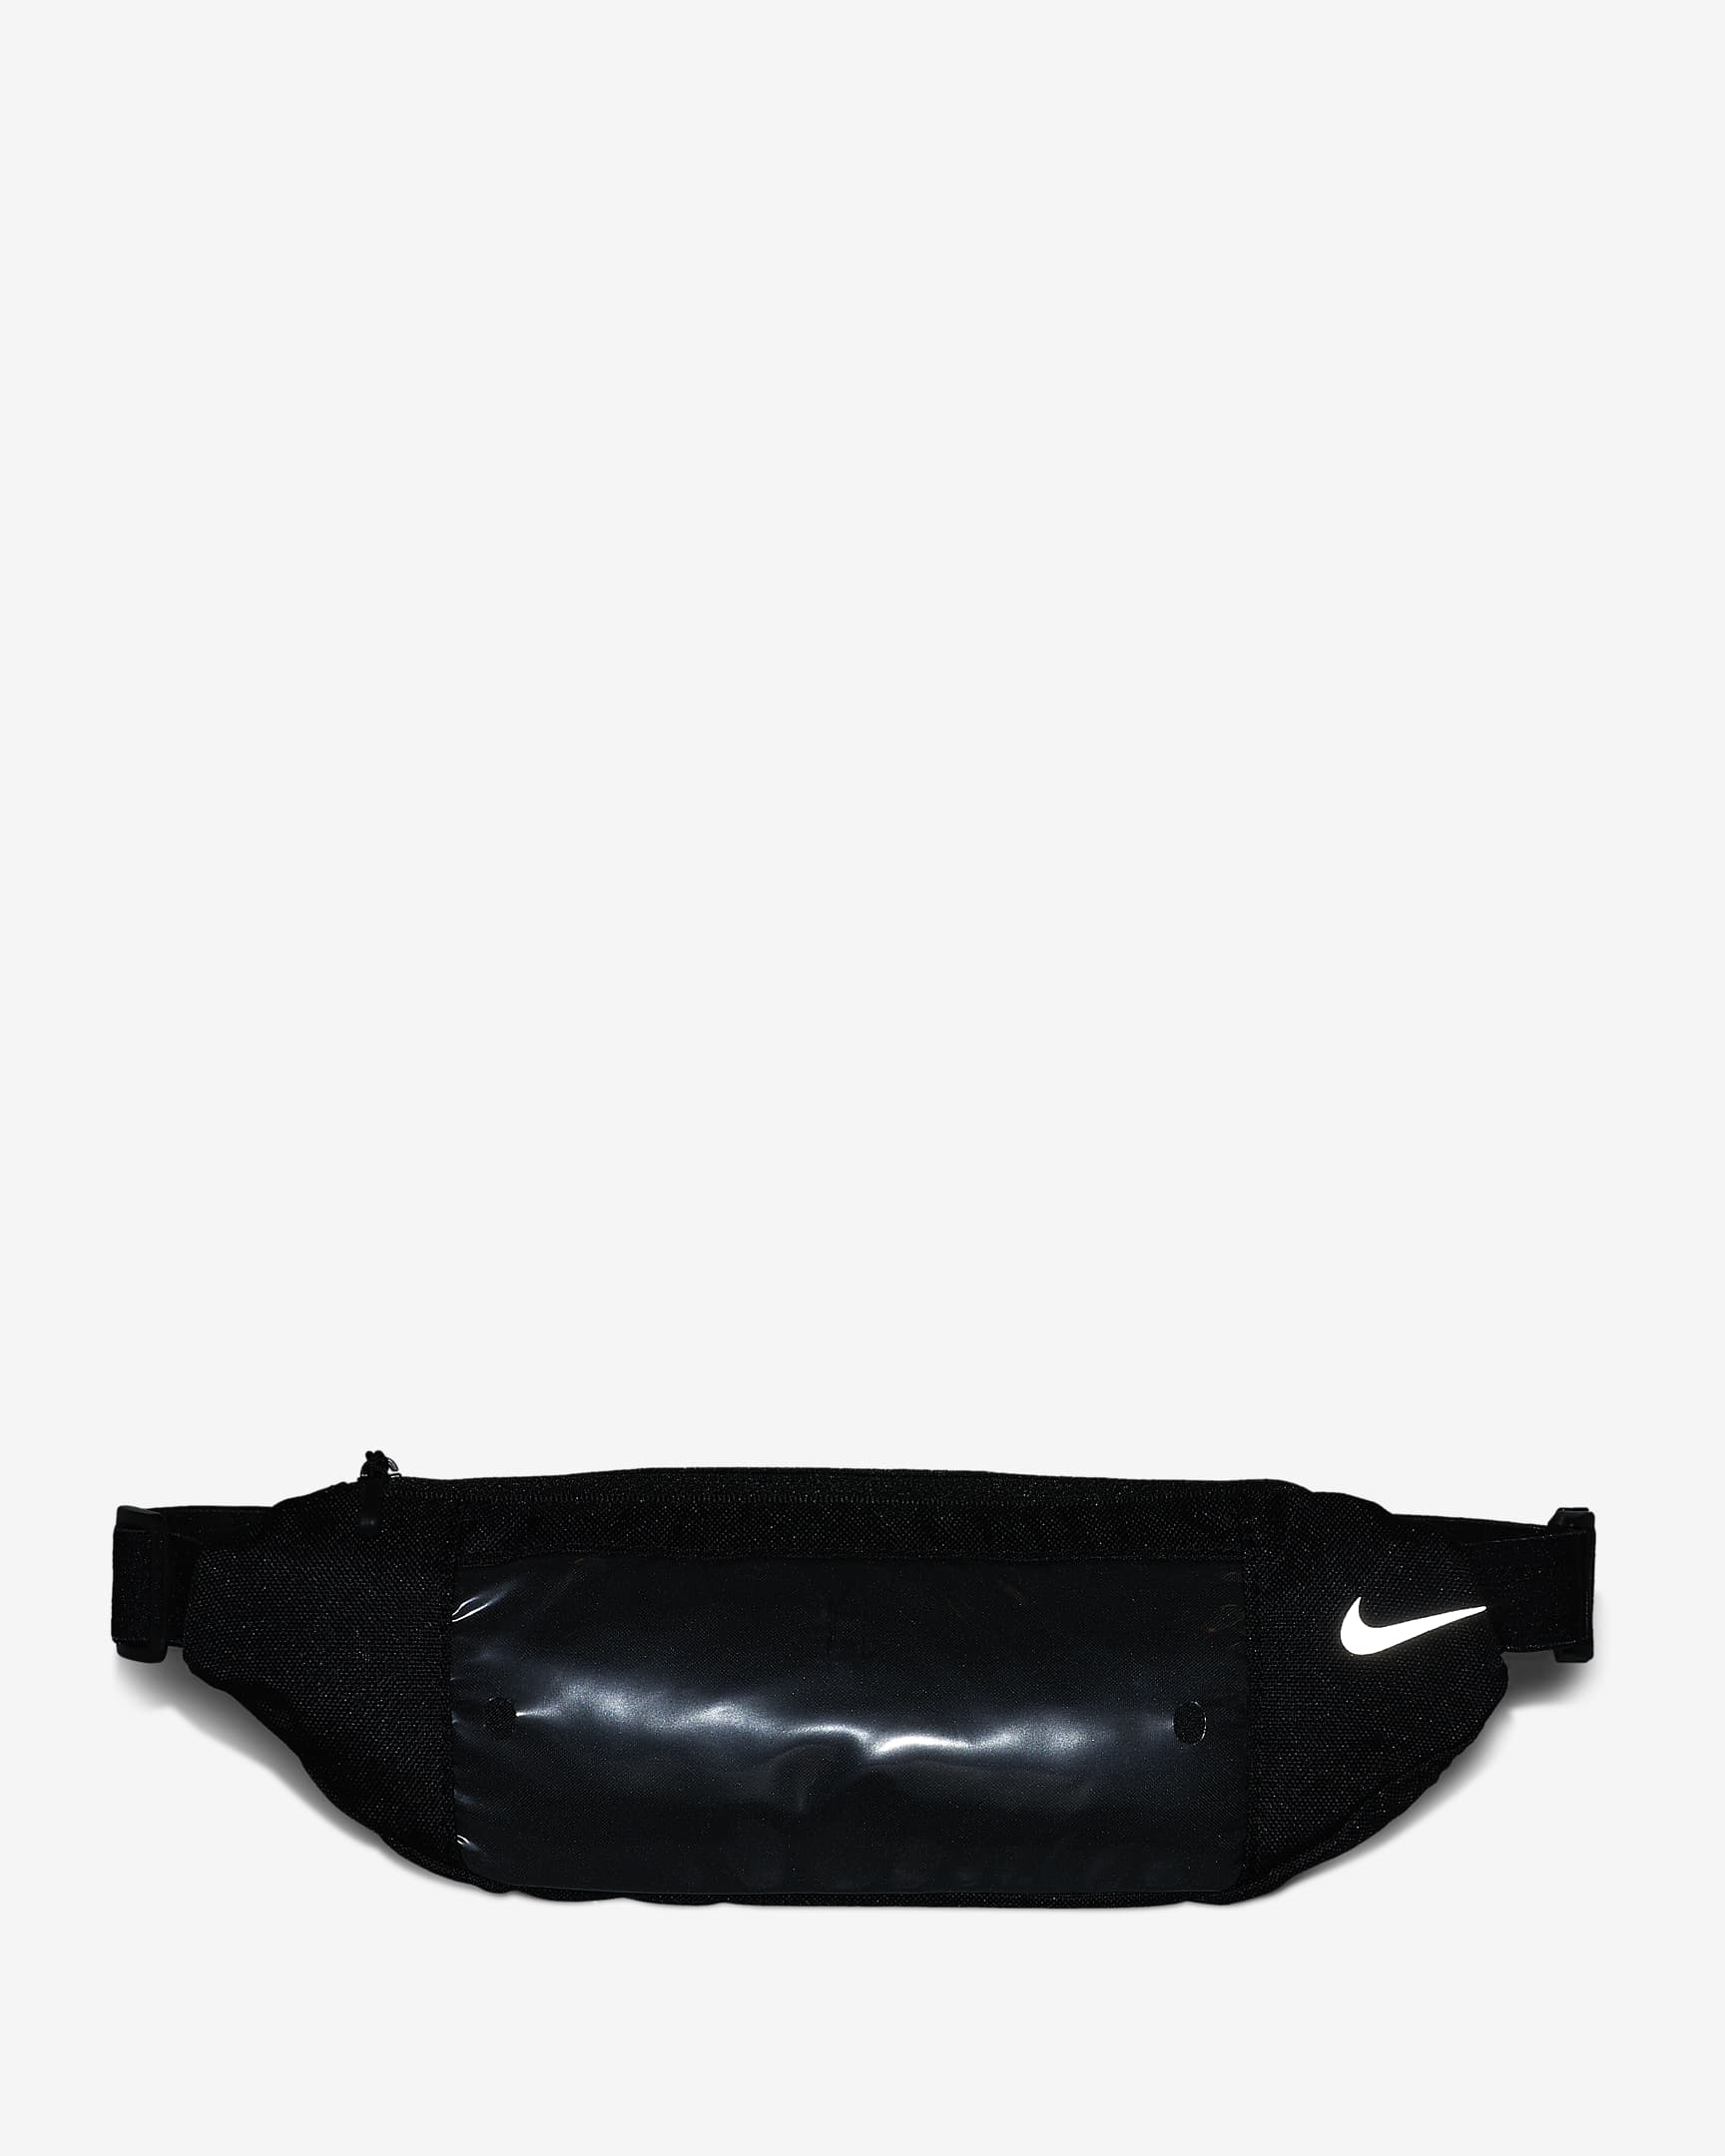 Nike Pack. Nike.com